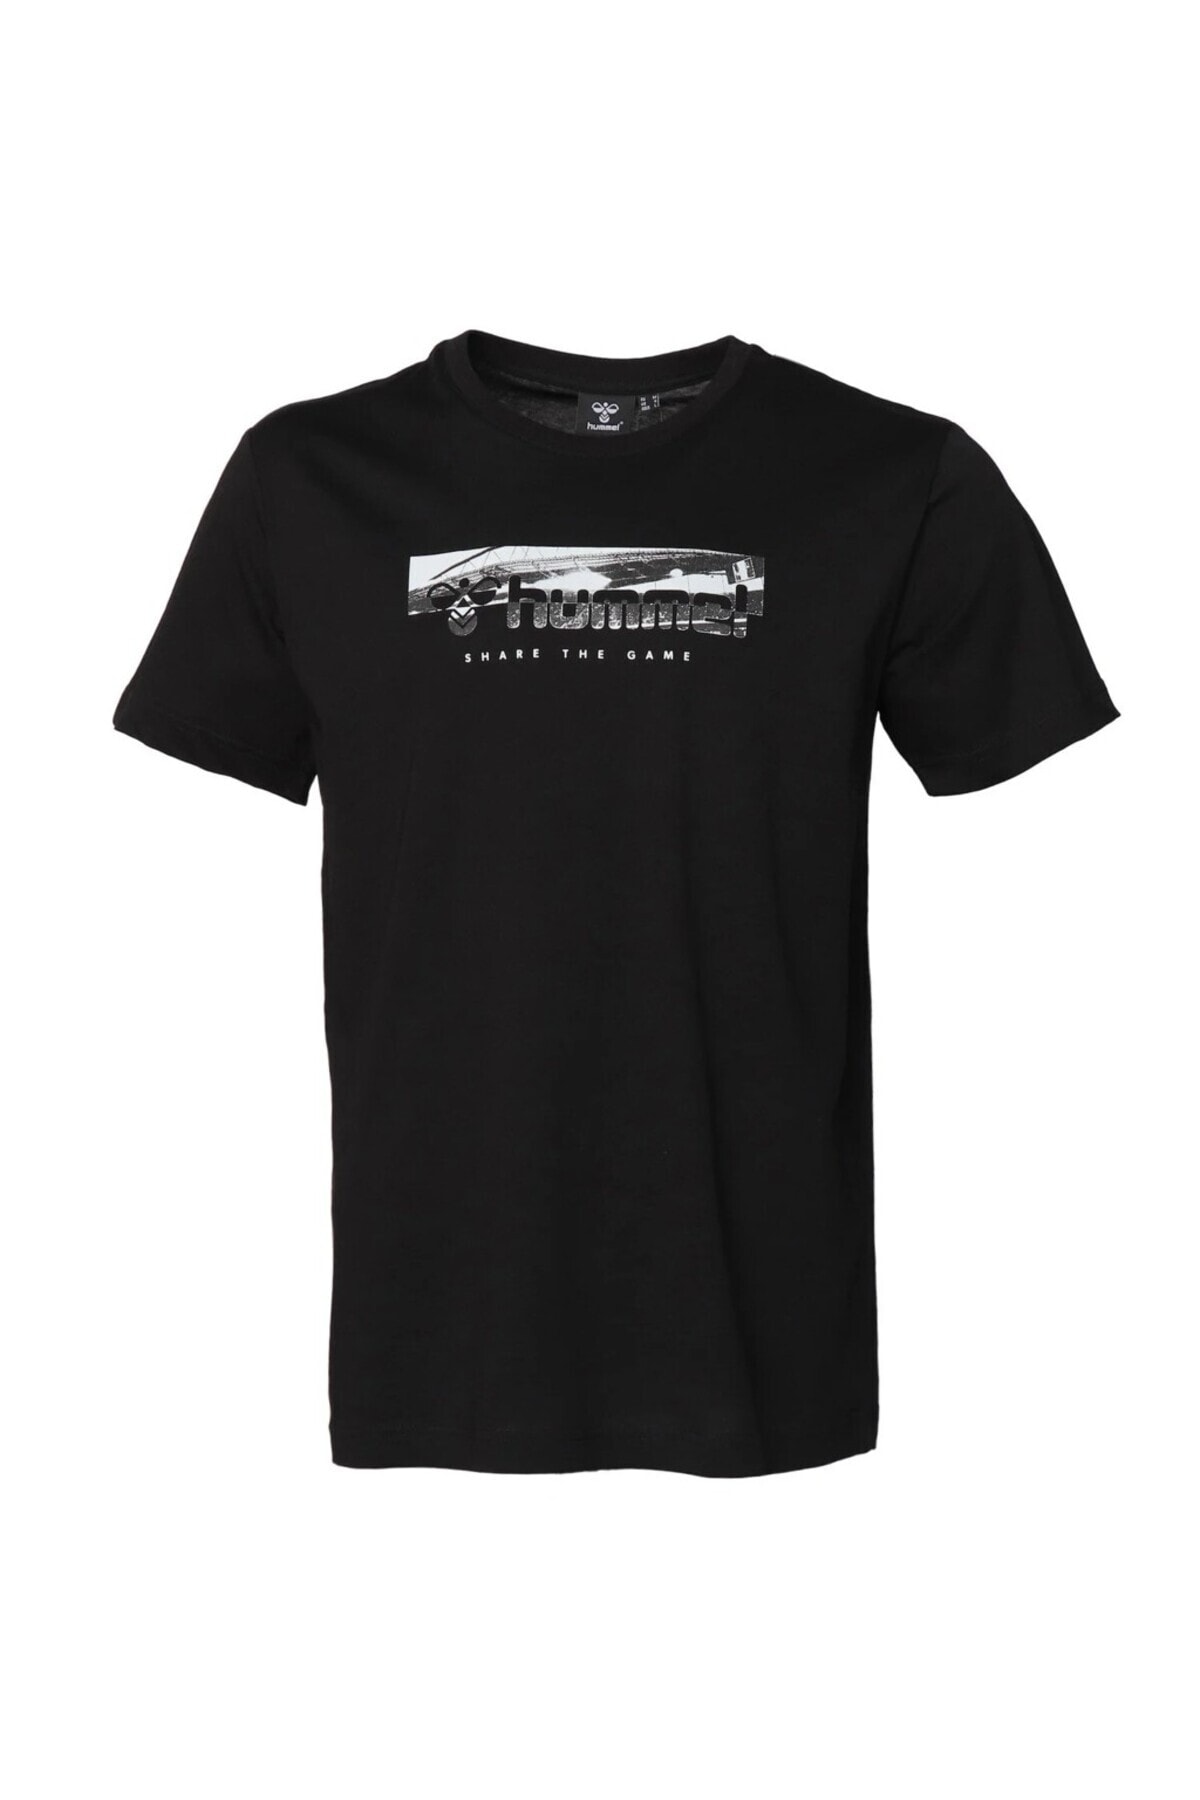 HUMMEL تی شرت مردانه یقه خدمه مشکی برایان